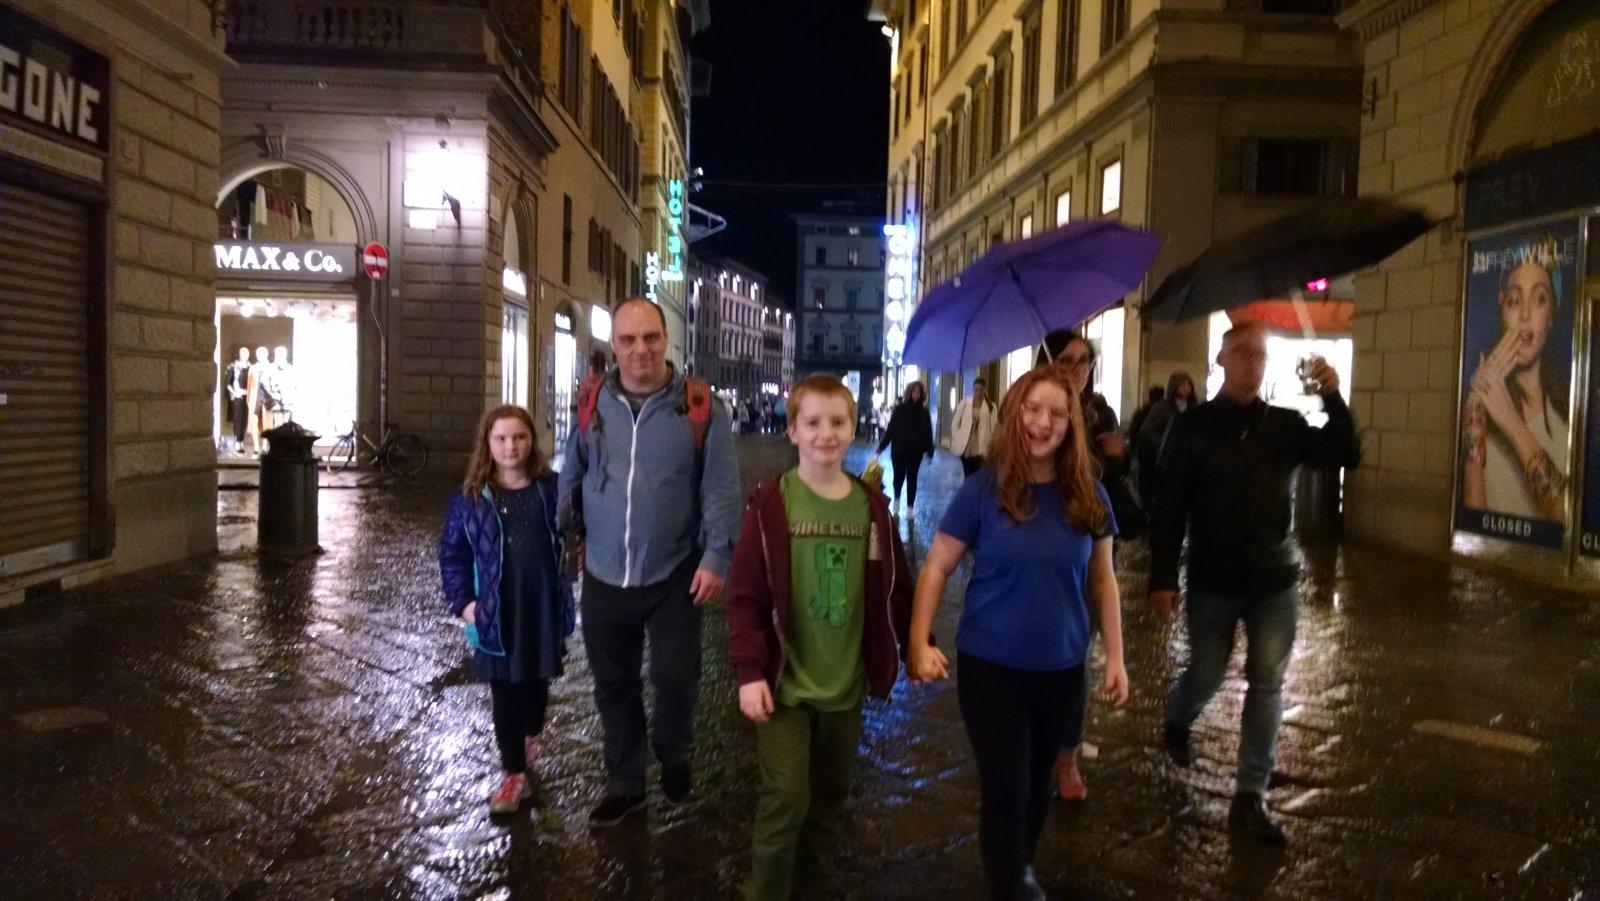 Late night walk in Florence